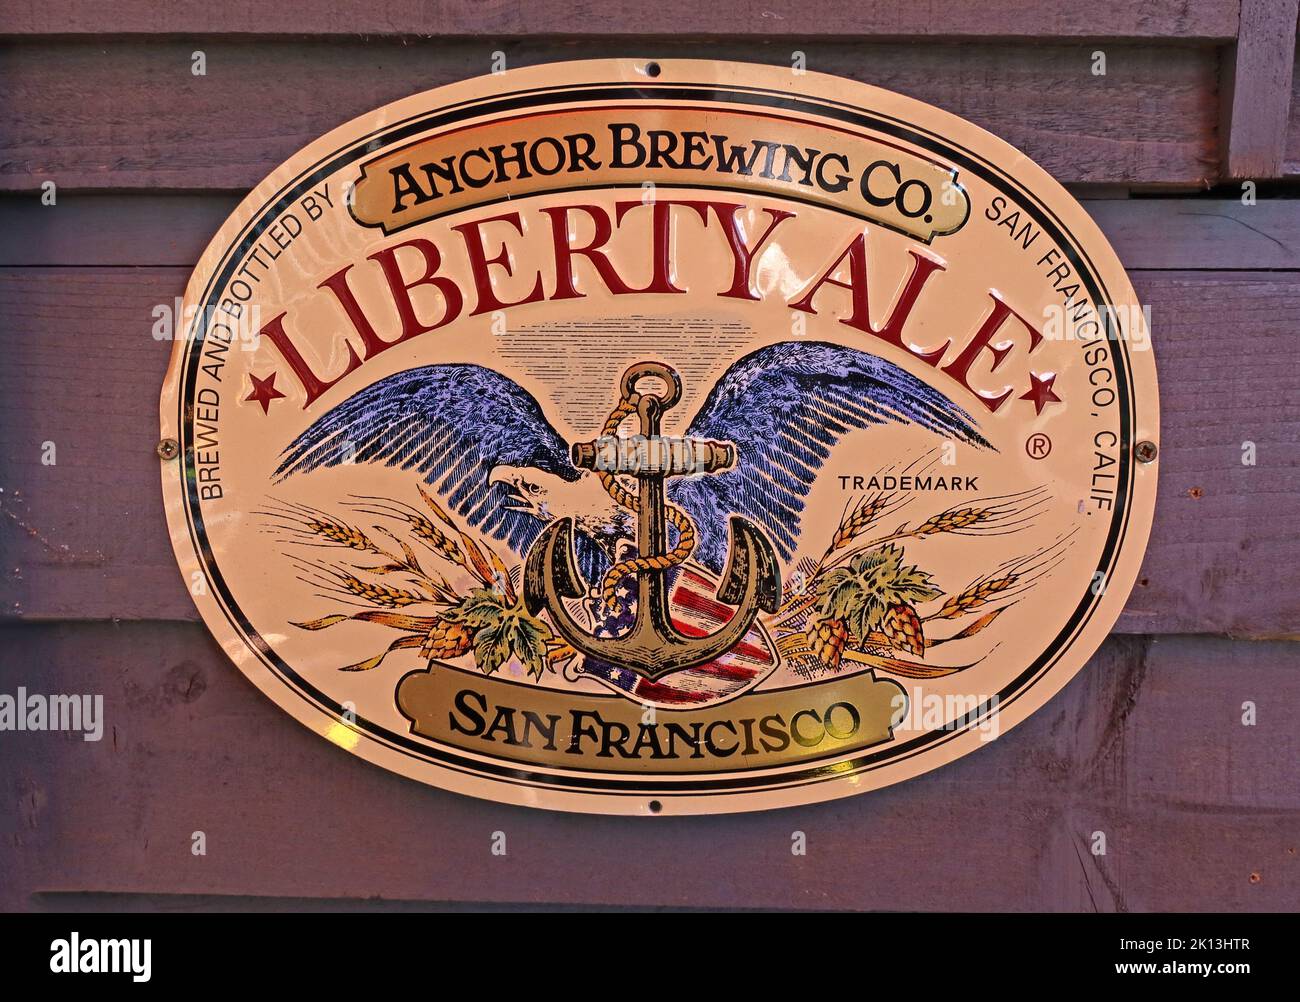 Anchor Brewing Co, Liberty Ale, publicité métal de marque commerciale, San Francisco, Calif, ÉTATS-UNIS Banque D'Images